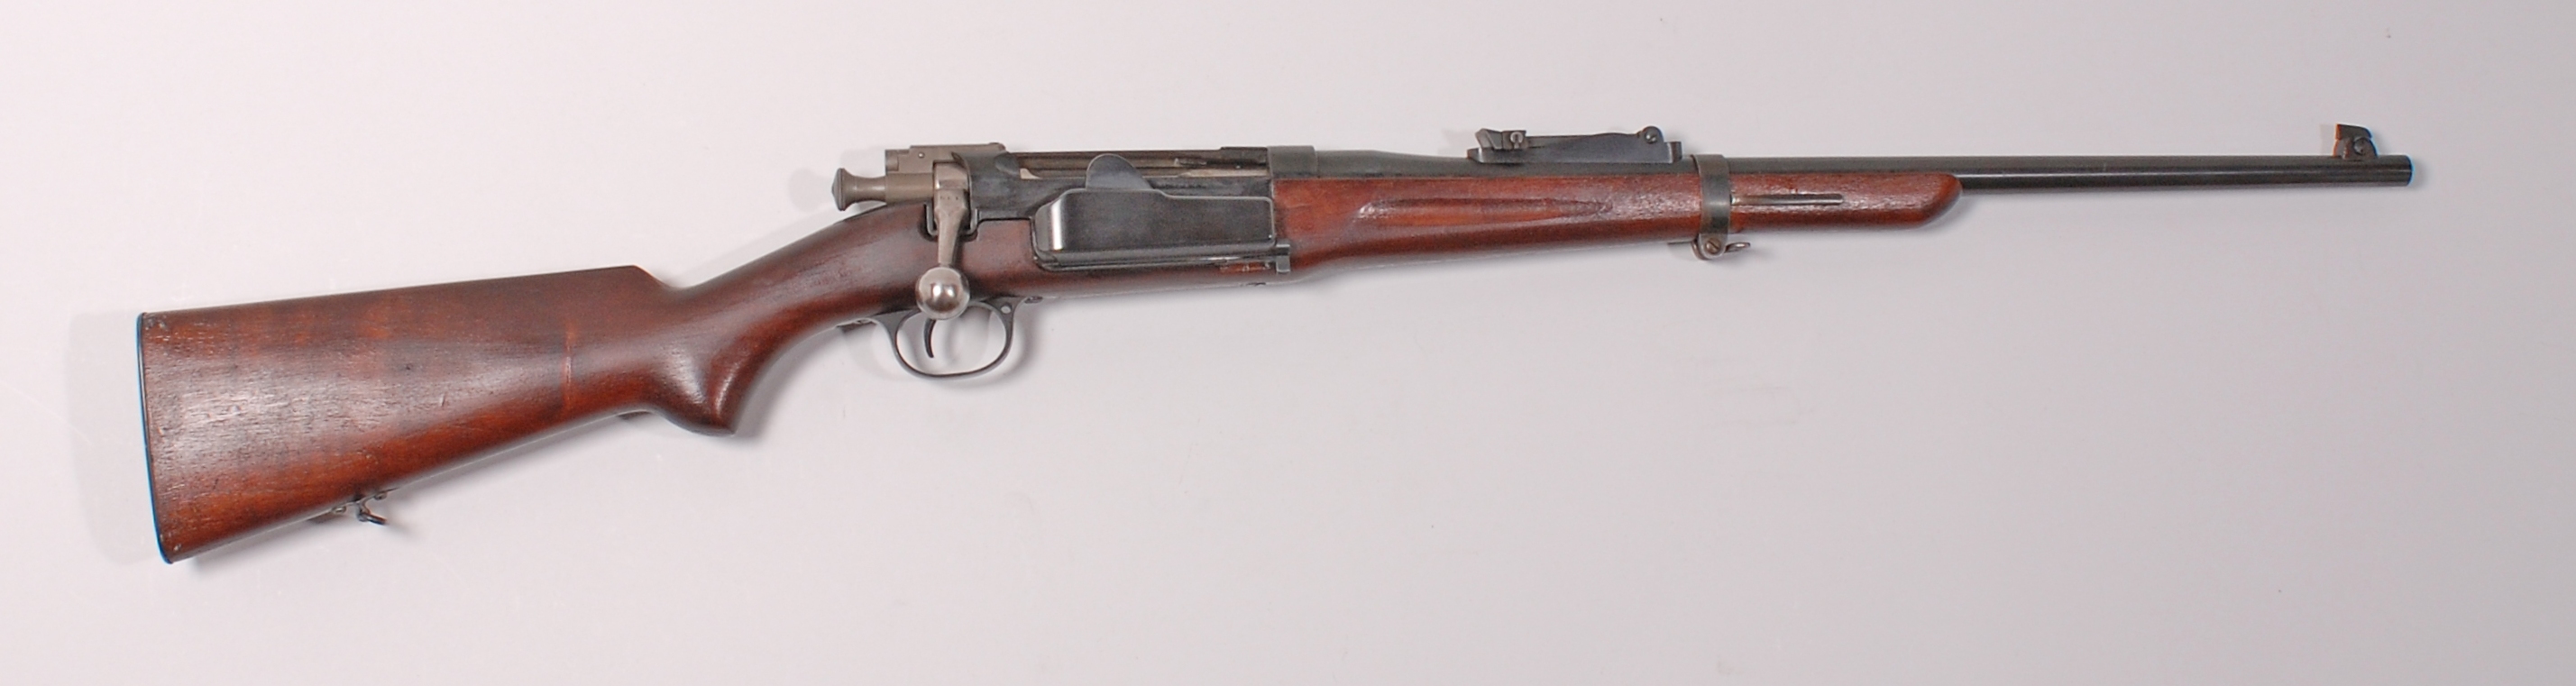 ./guns/rifle/bilder/Rifle-Kongsberg-Krag-M1906-135-1.jpg